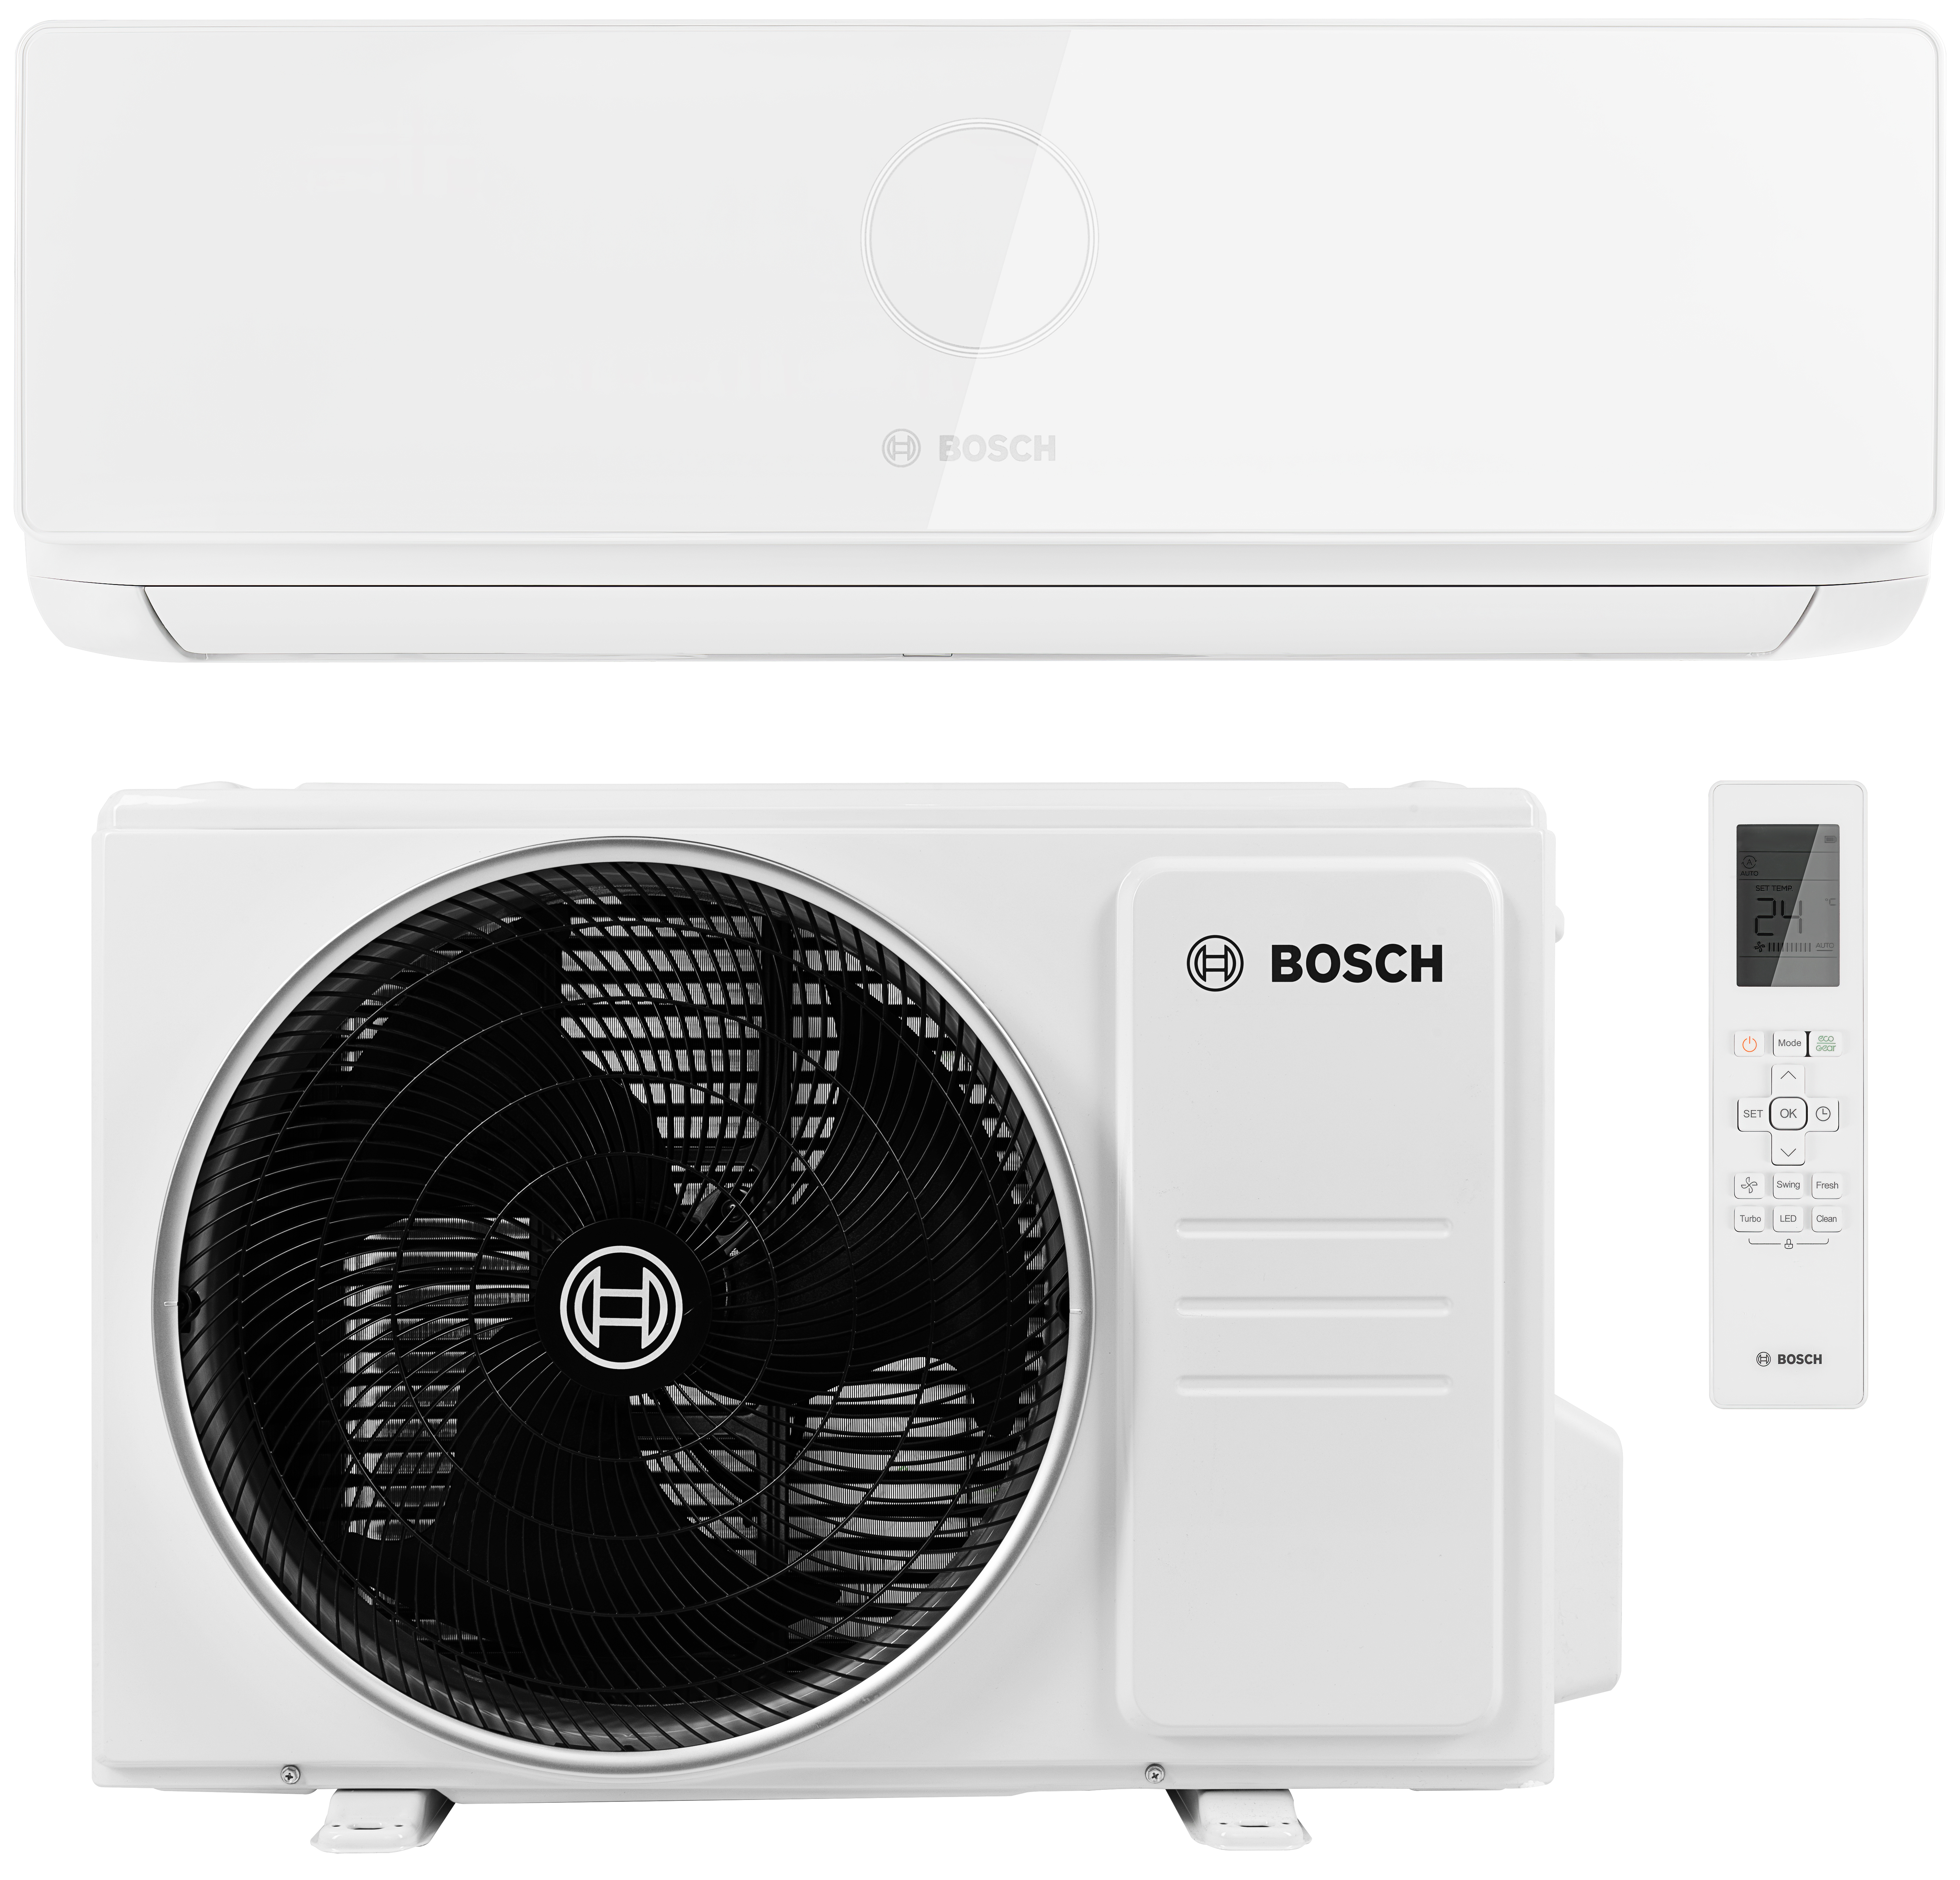 Bosch Climate CL5000i 26 E